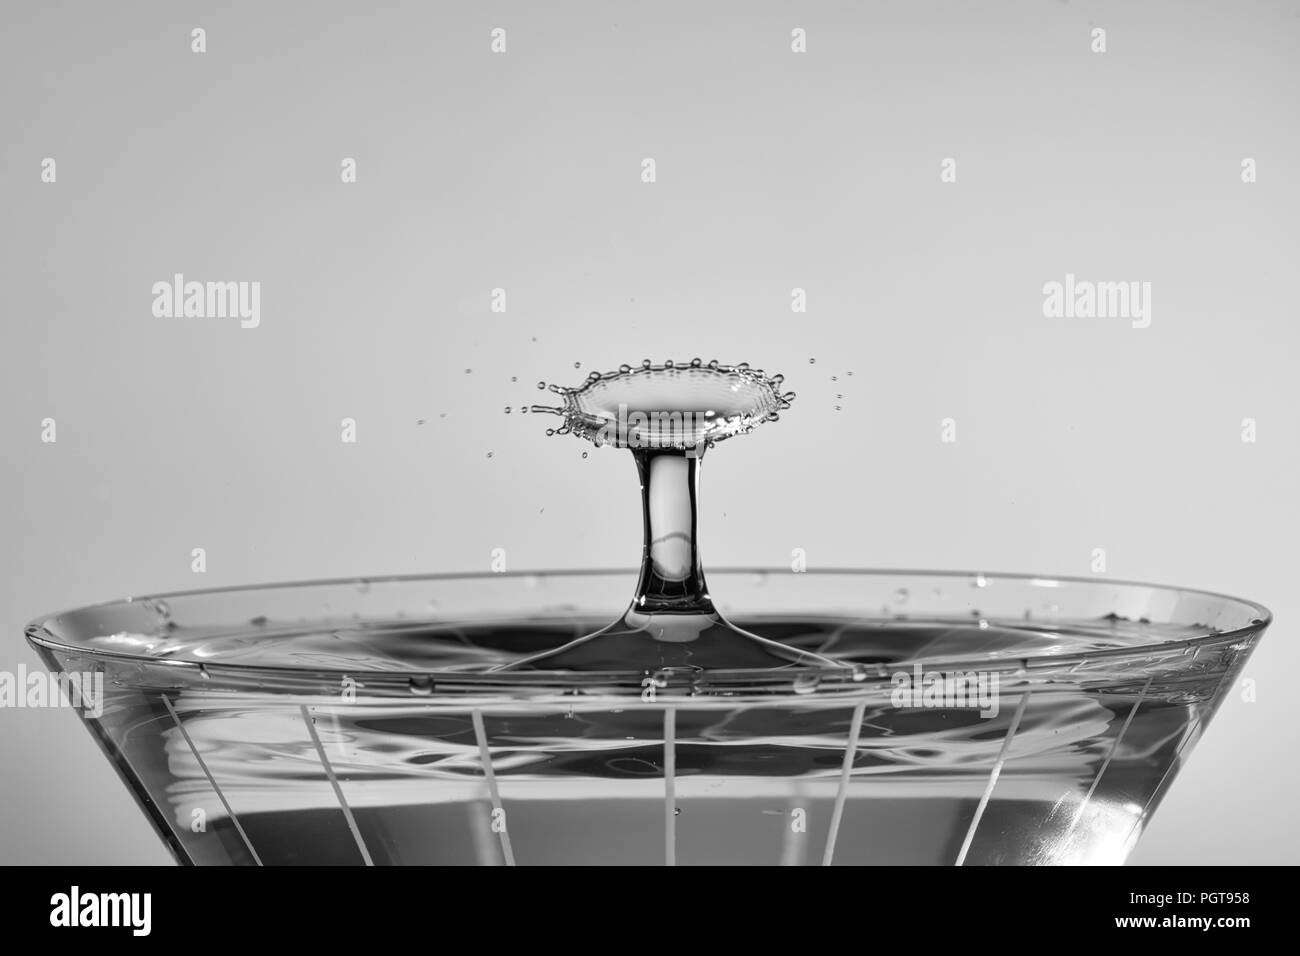 Tröpfchen kollidieren oben Martini Glas, wodurch ein radiallüfter Muster. Als monochrom verarbeitet. Stockfoto